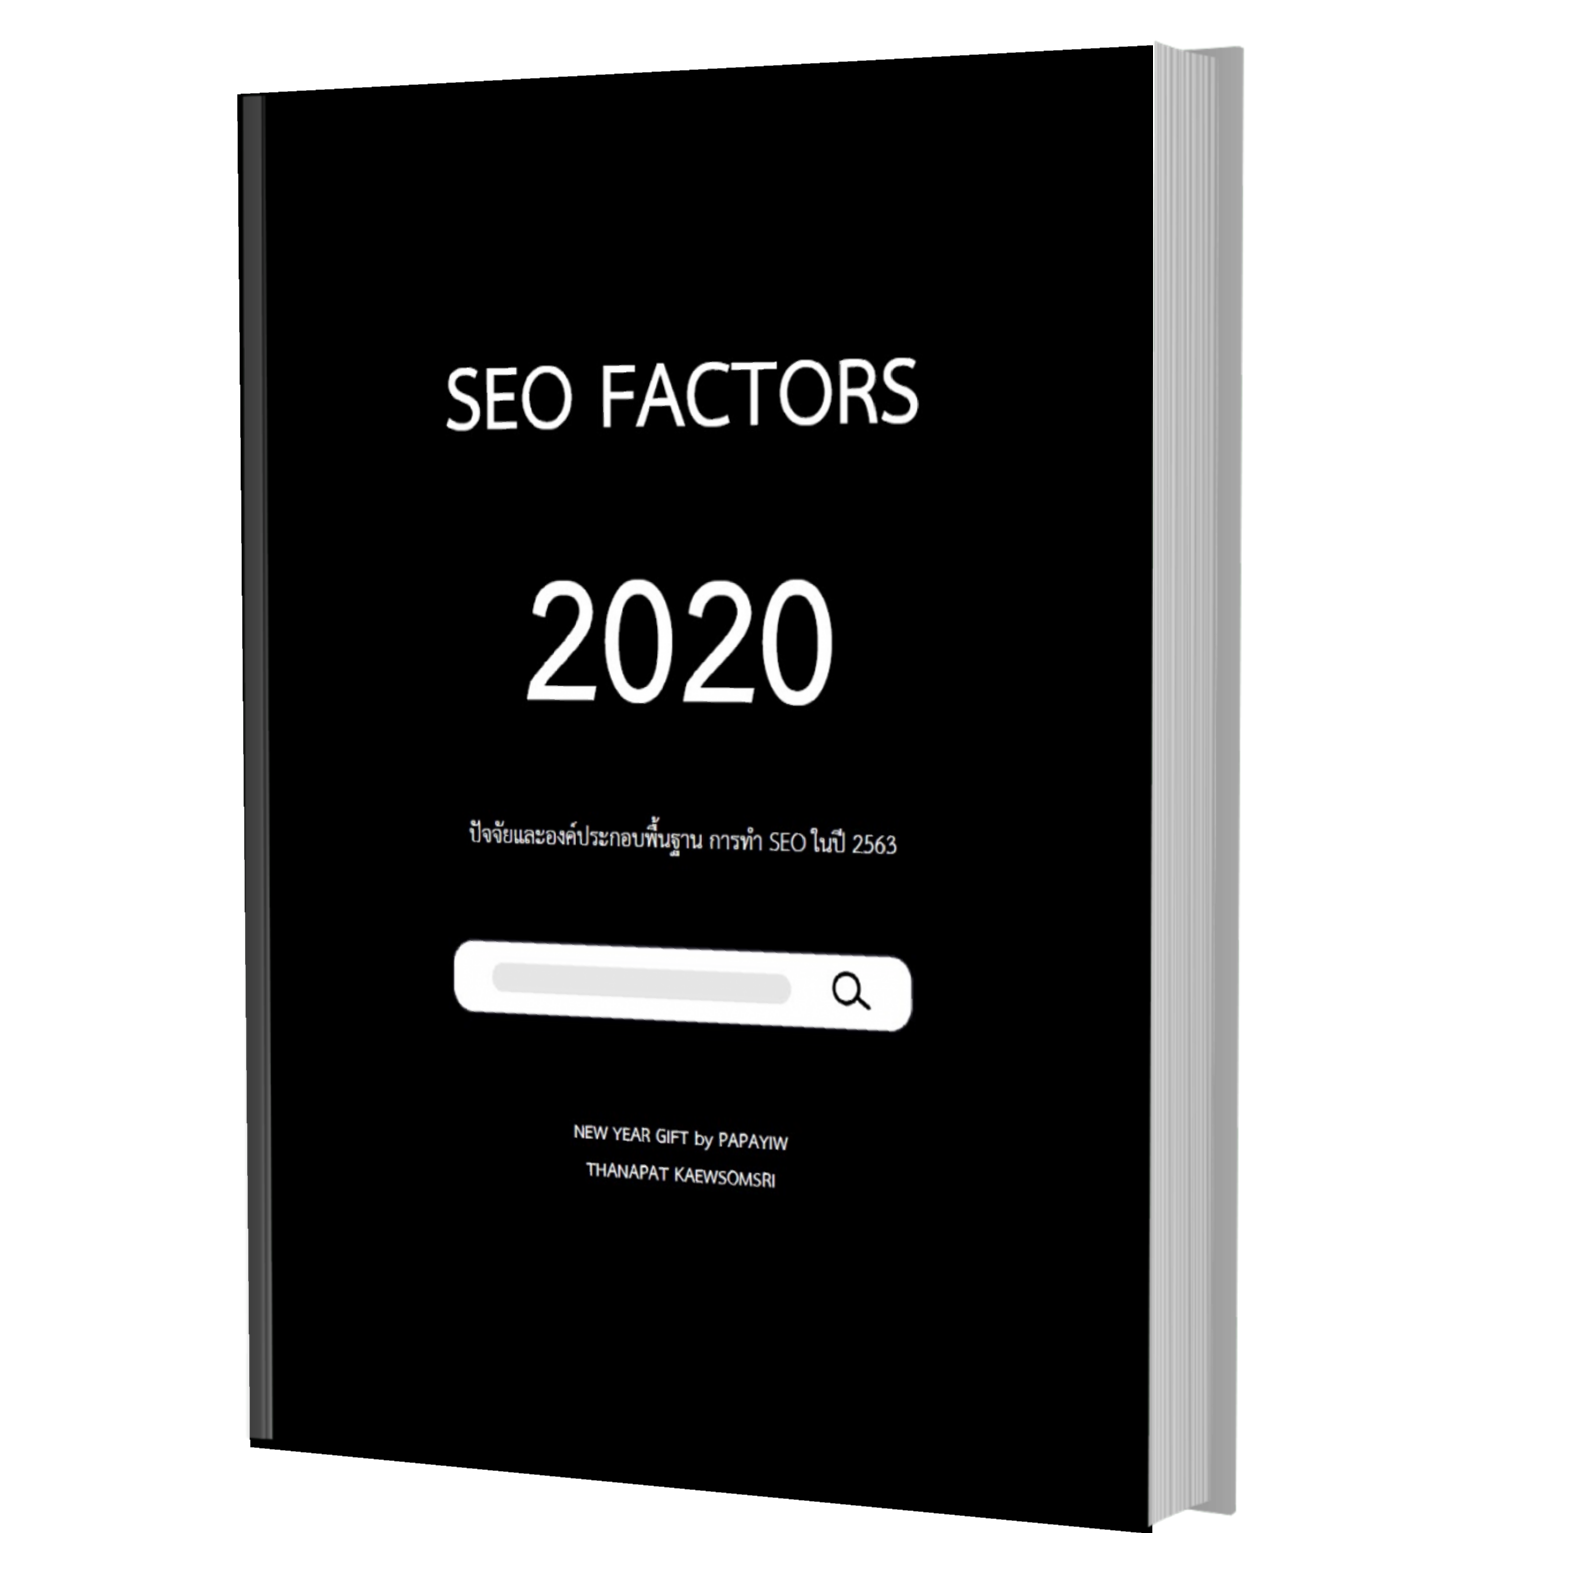 SEO FACTORS 2020 eBooks